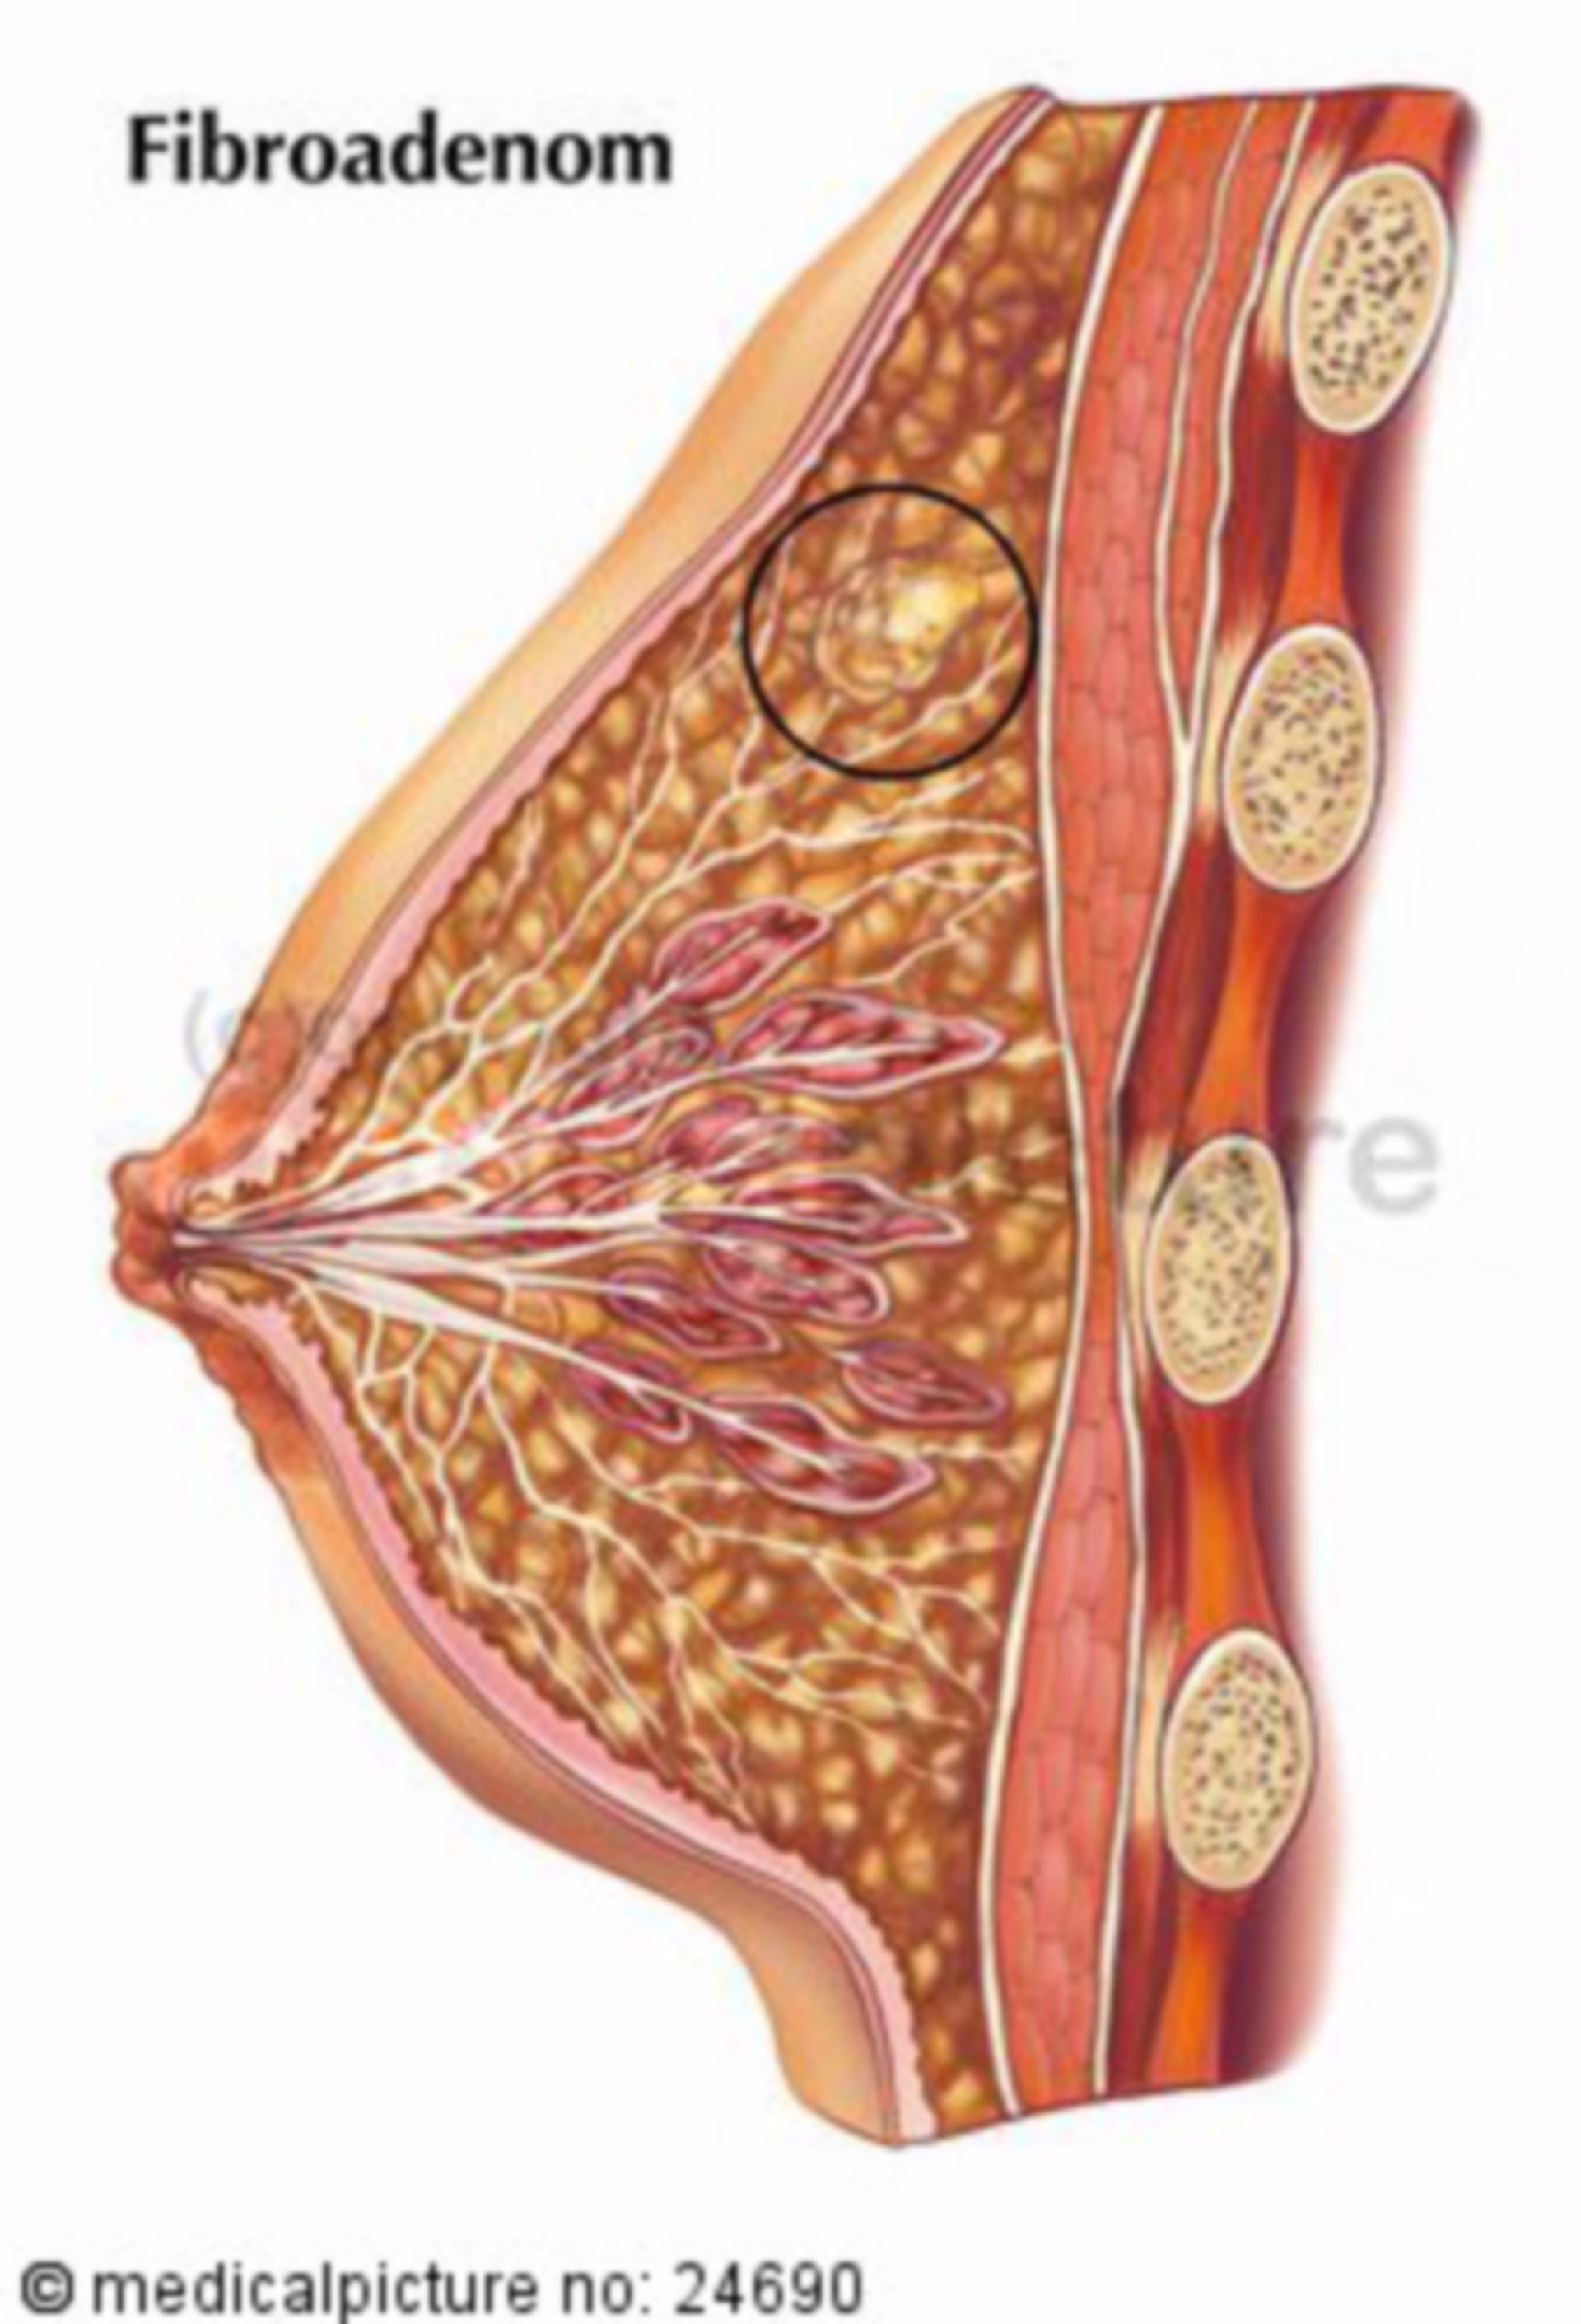  Fibroadenom der weiblichen Brust 
